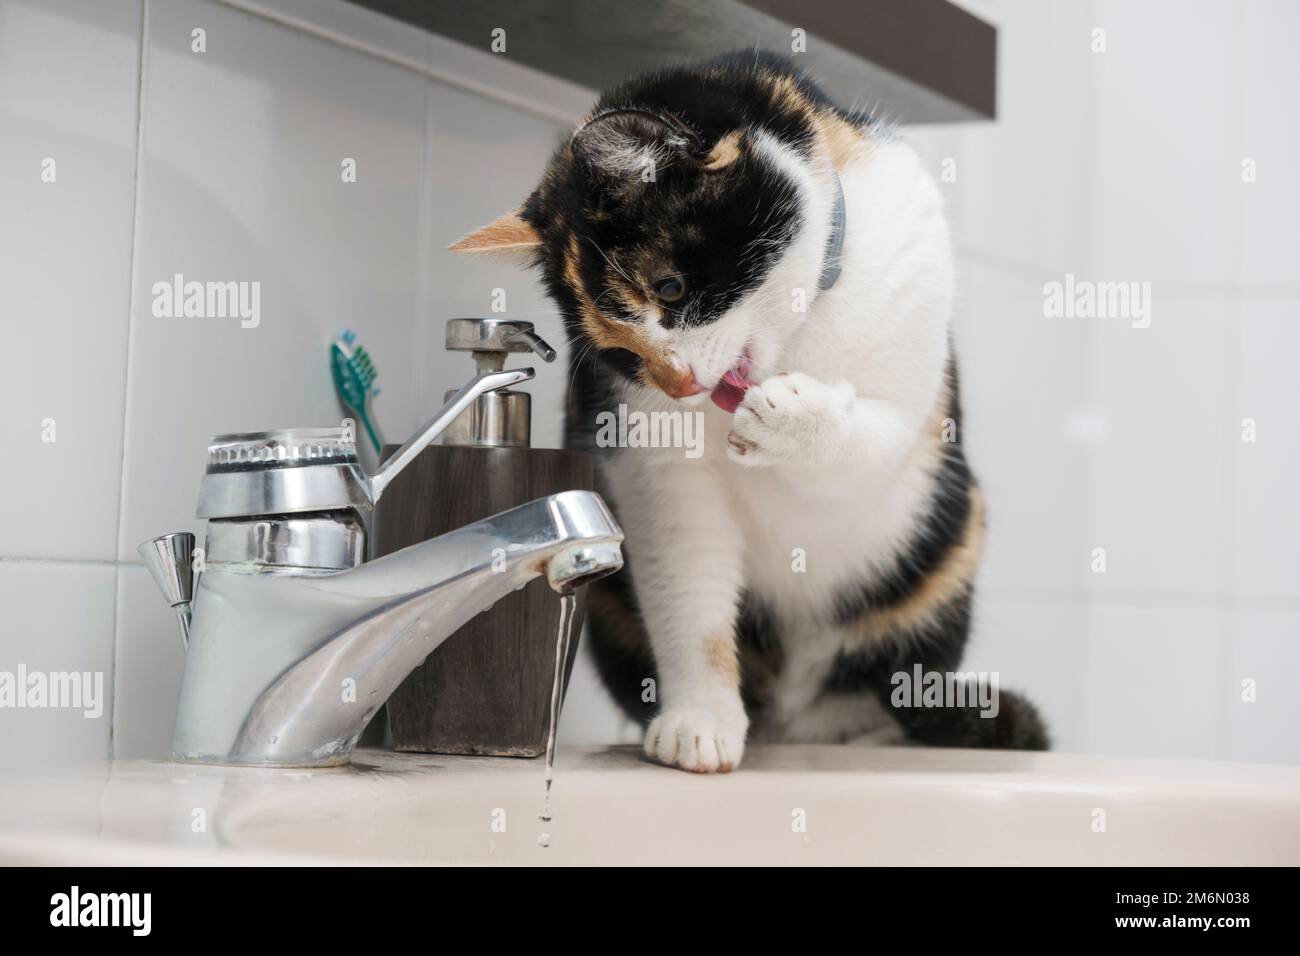 Domestic cat washing himself sitting on the washbasin Stock Photo